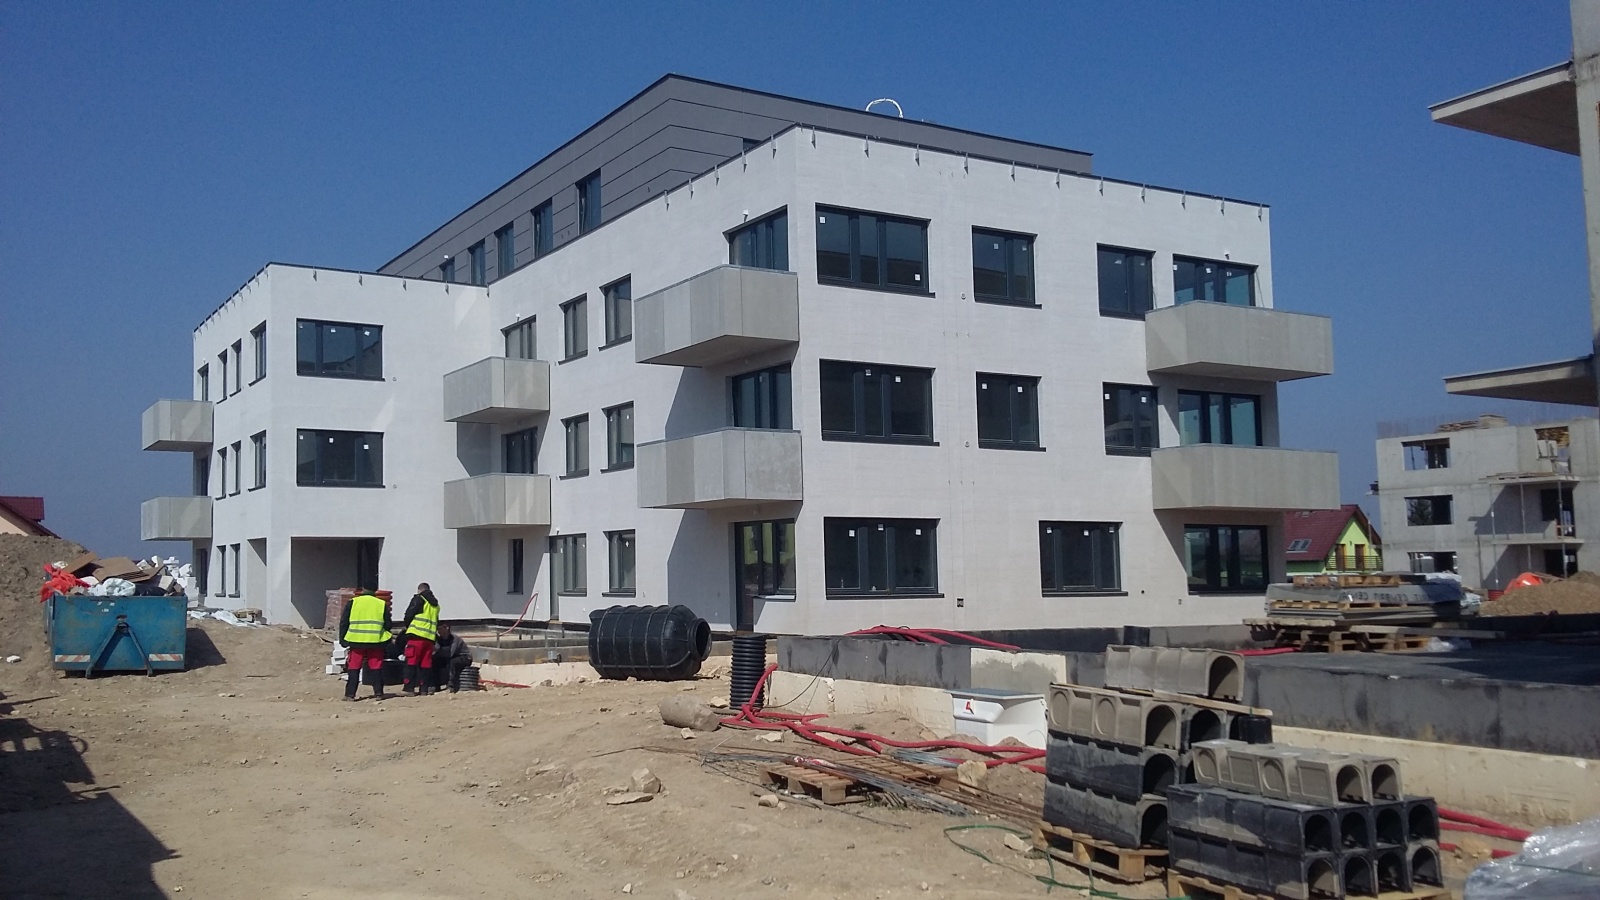 Byt 4+kk, 117.30 m2, Horoměřice, Projekt Višnovka - bytové domy